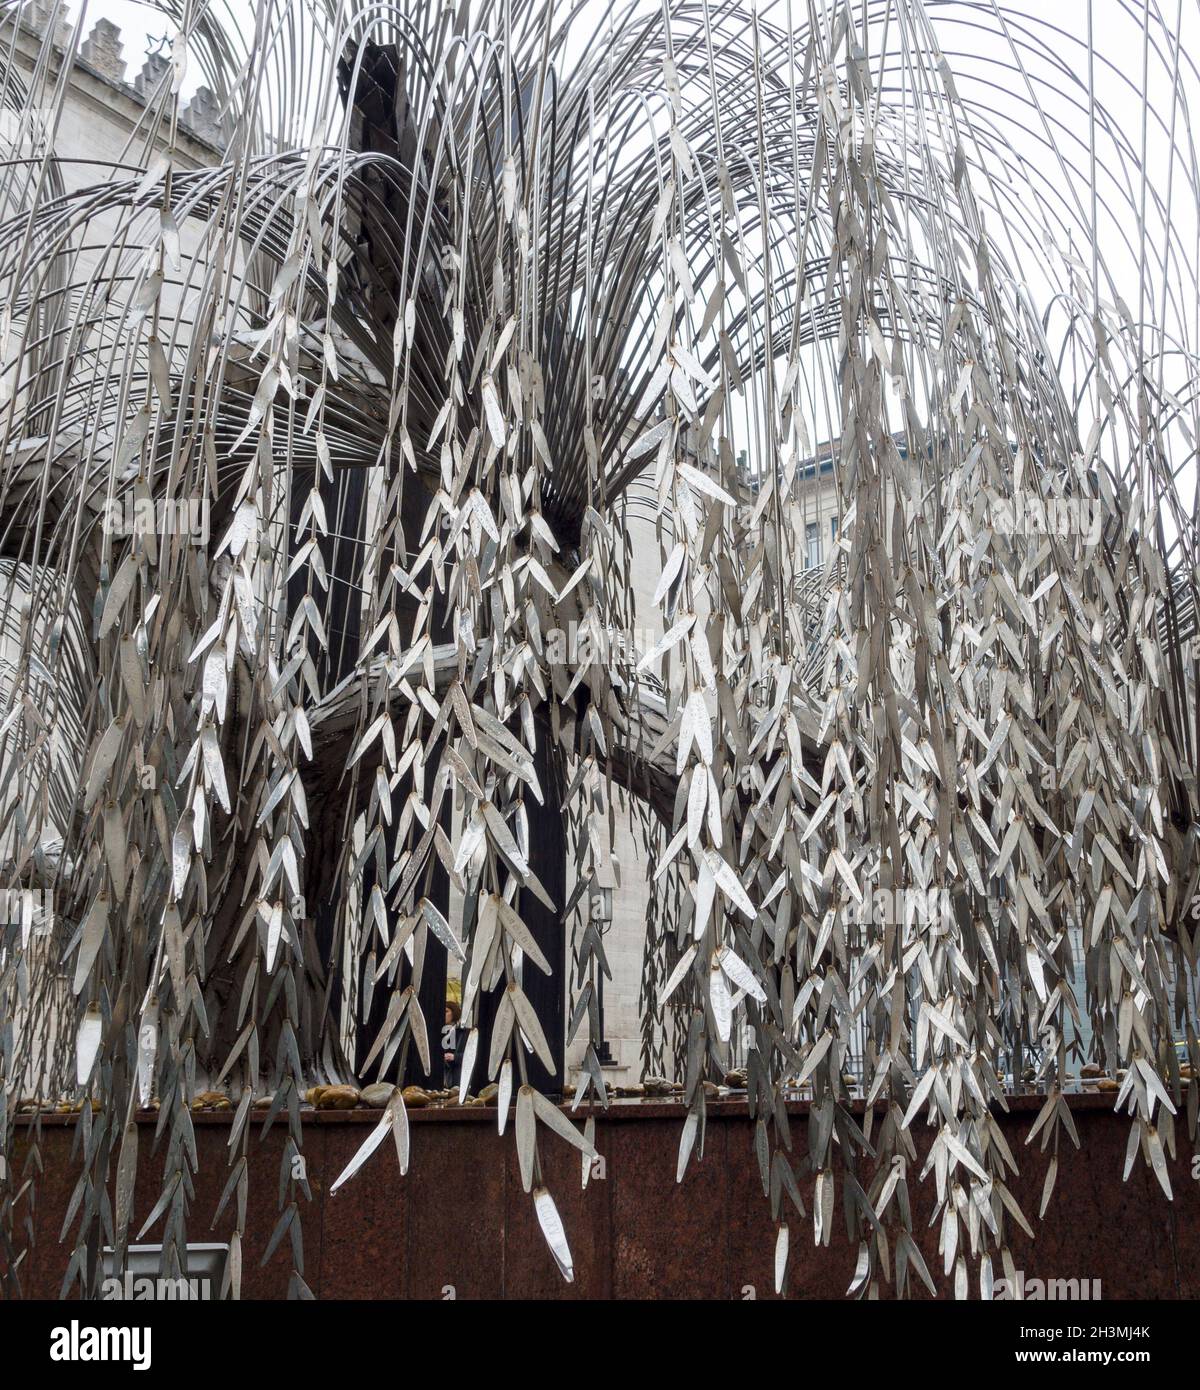 Monumento al Holocausto: Un sauce que llora en acero inoxidable: El árbol conmemorativo de Hollocaust en la Gran Sinagoga de Budapest toma la forma de un sauce armado con hojas que nombran a las víctimas. El agua de lluvia gotea como lágrimas. Foto de stock